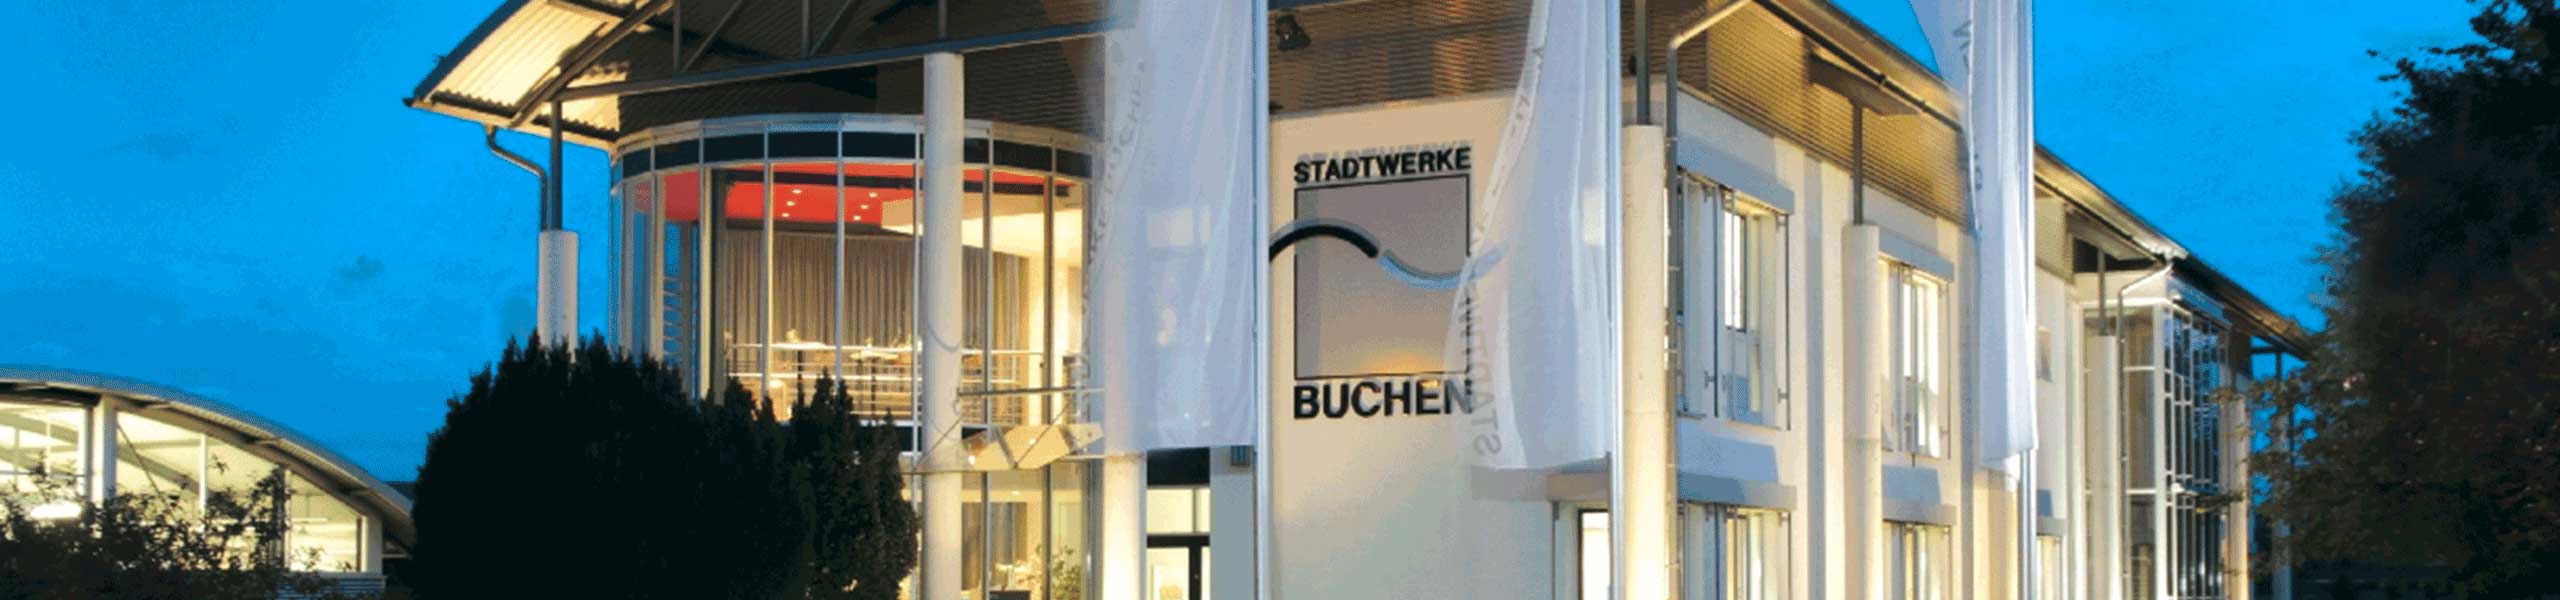 Stadtwerke Buchen GmbH & Co KG - Mudau